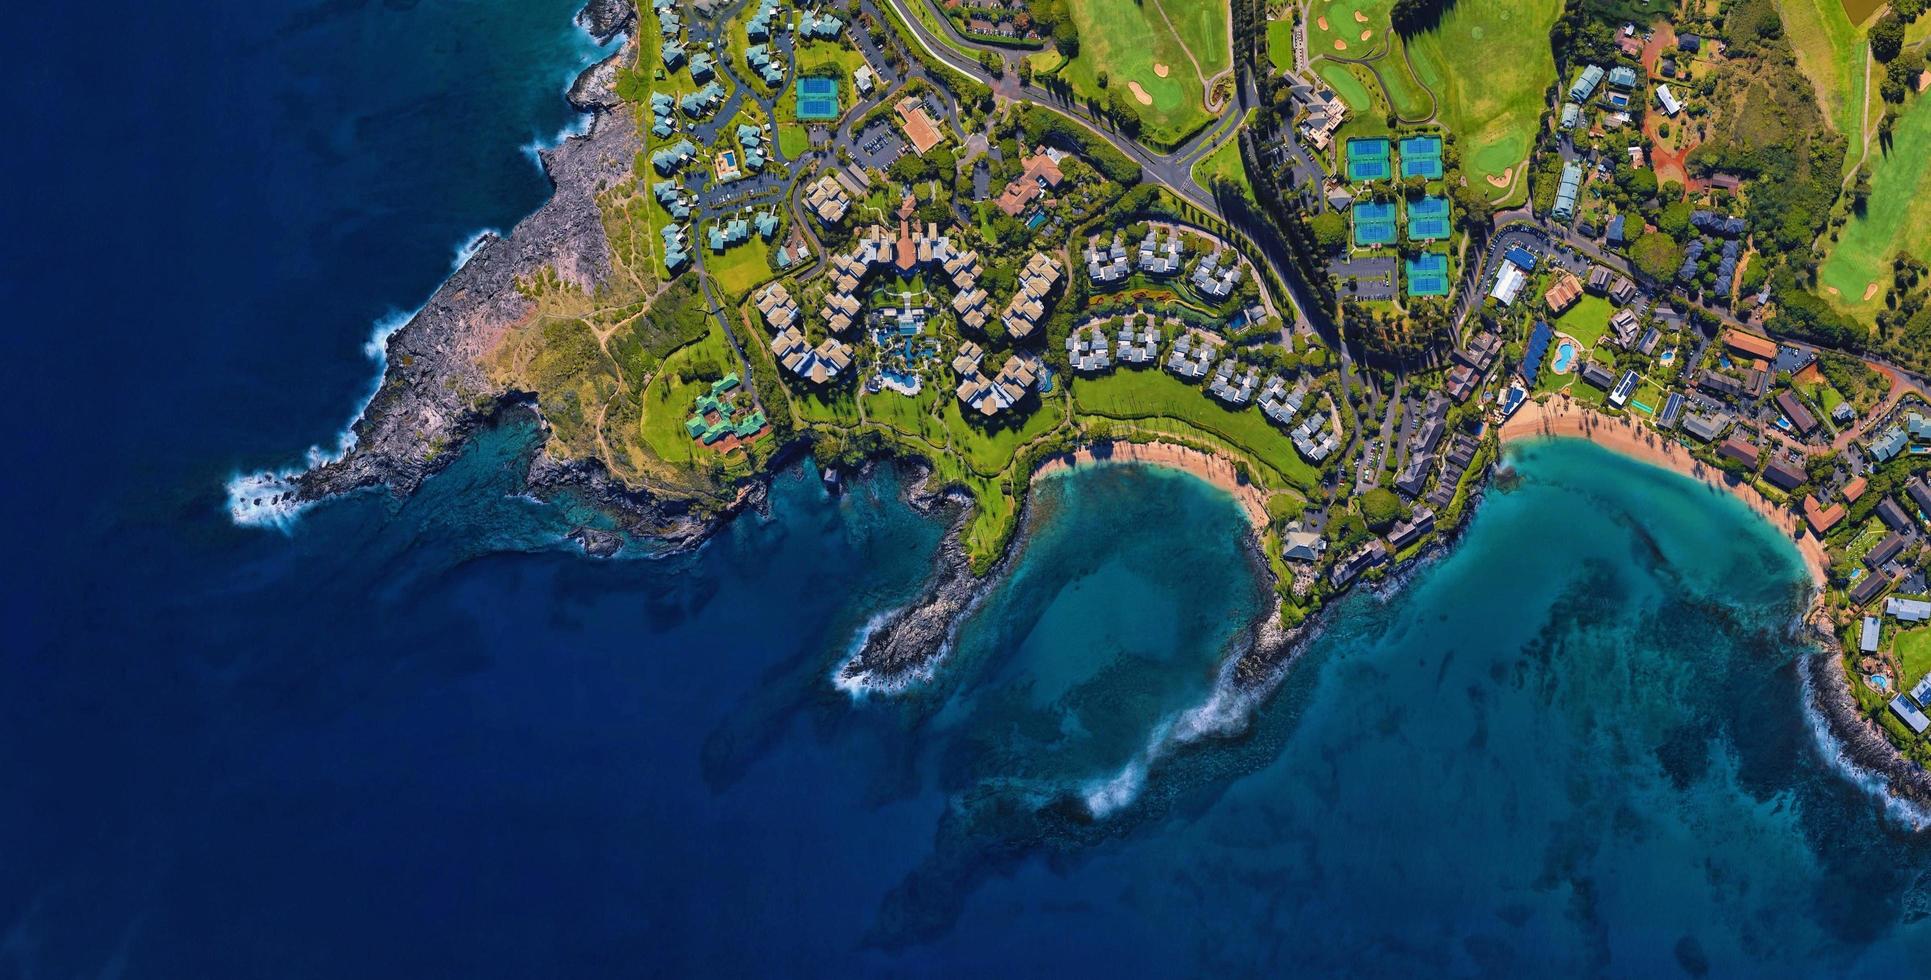 Hawaii SeaShore Landscape photo